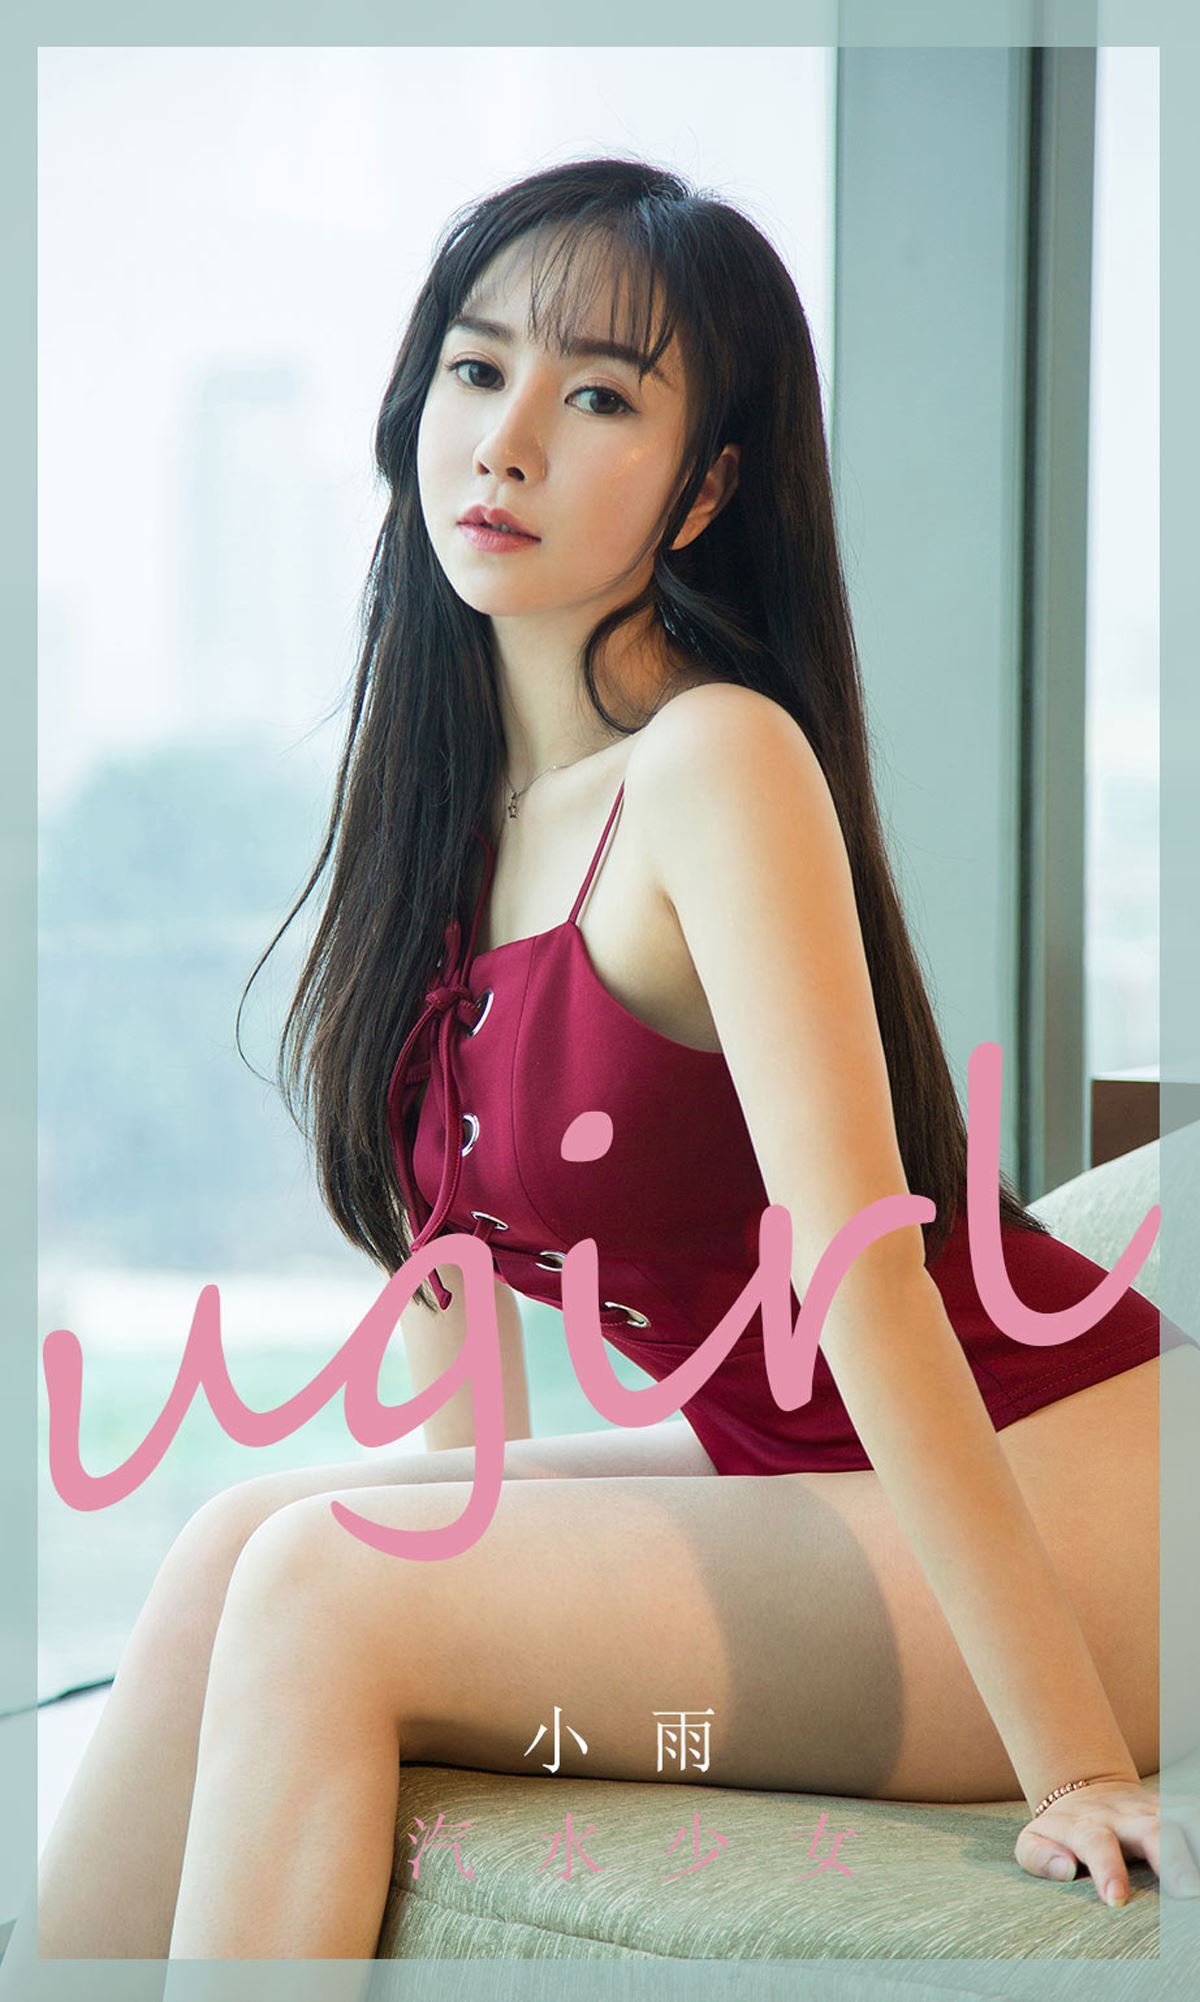 Ugirls Youguo love Youwu 2020.03.29 no.1775 light rain soda girl